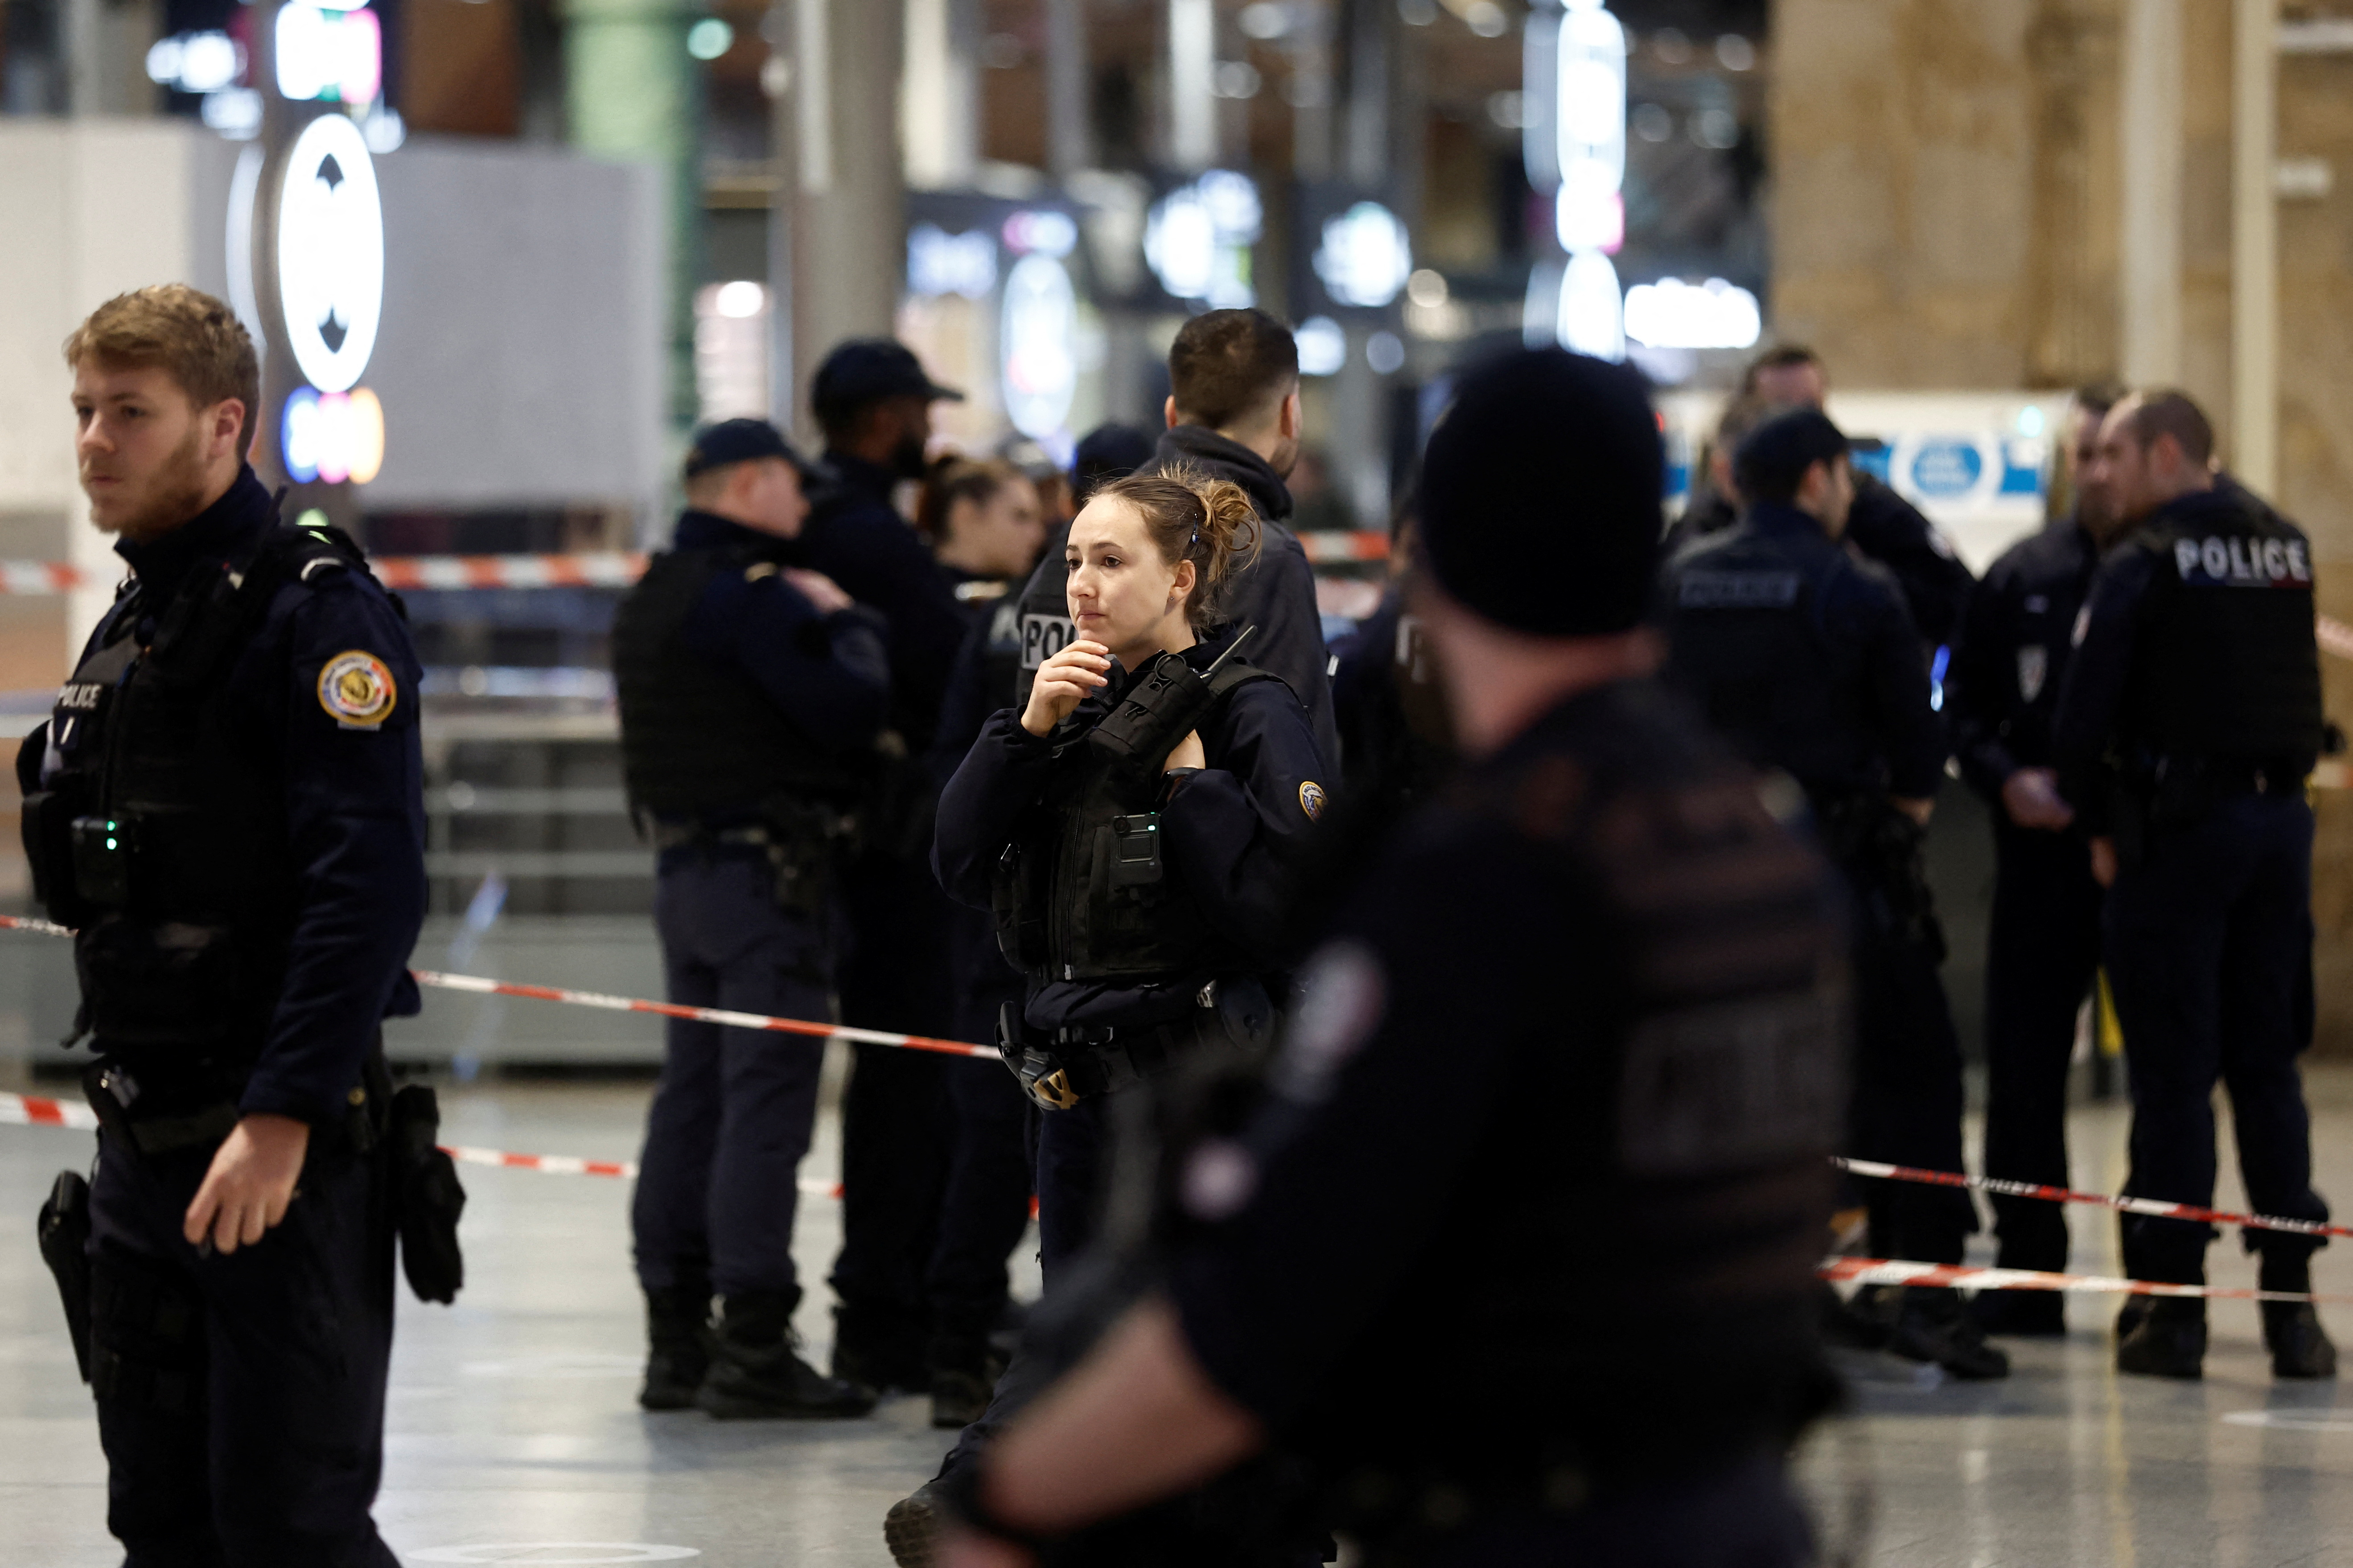 Los hechos ocurrieron hacia las 6.40 locales (5.40 GMT) cuando el agresor arremetió contra varios viajeros en el interior de la estación por motivos por ahora desconocidos. París, Francia, 11 de enero de 2023. REUTERS/Benoit Tessier